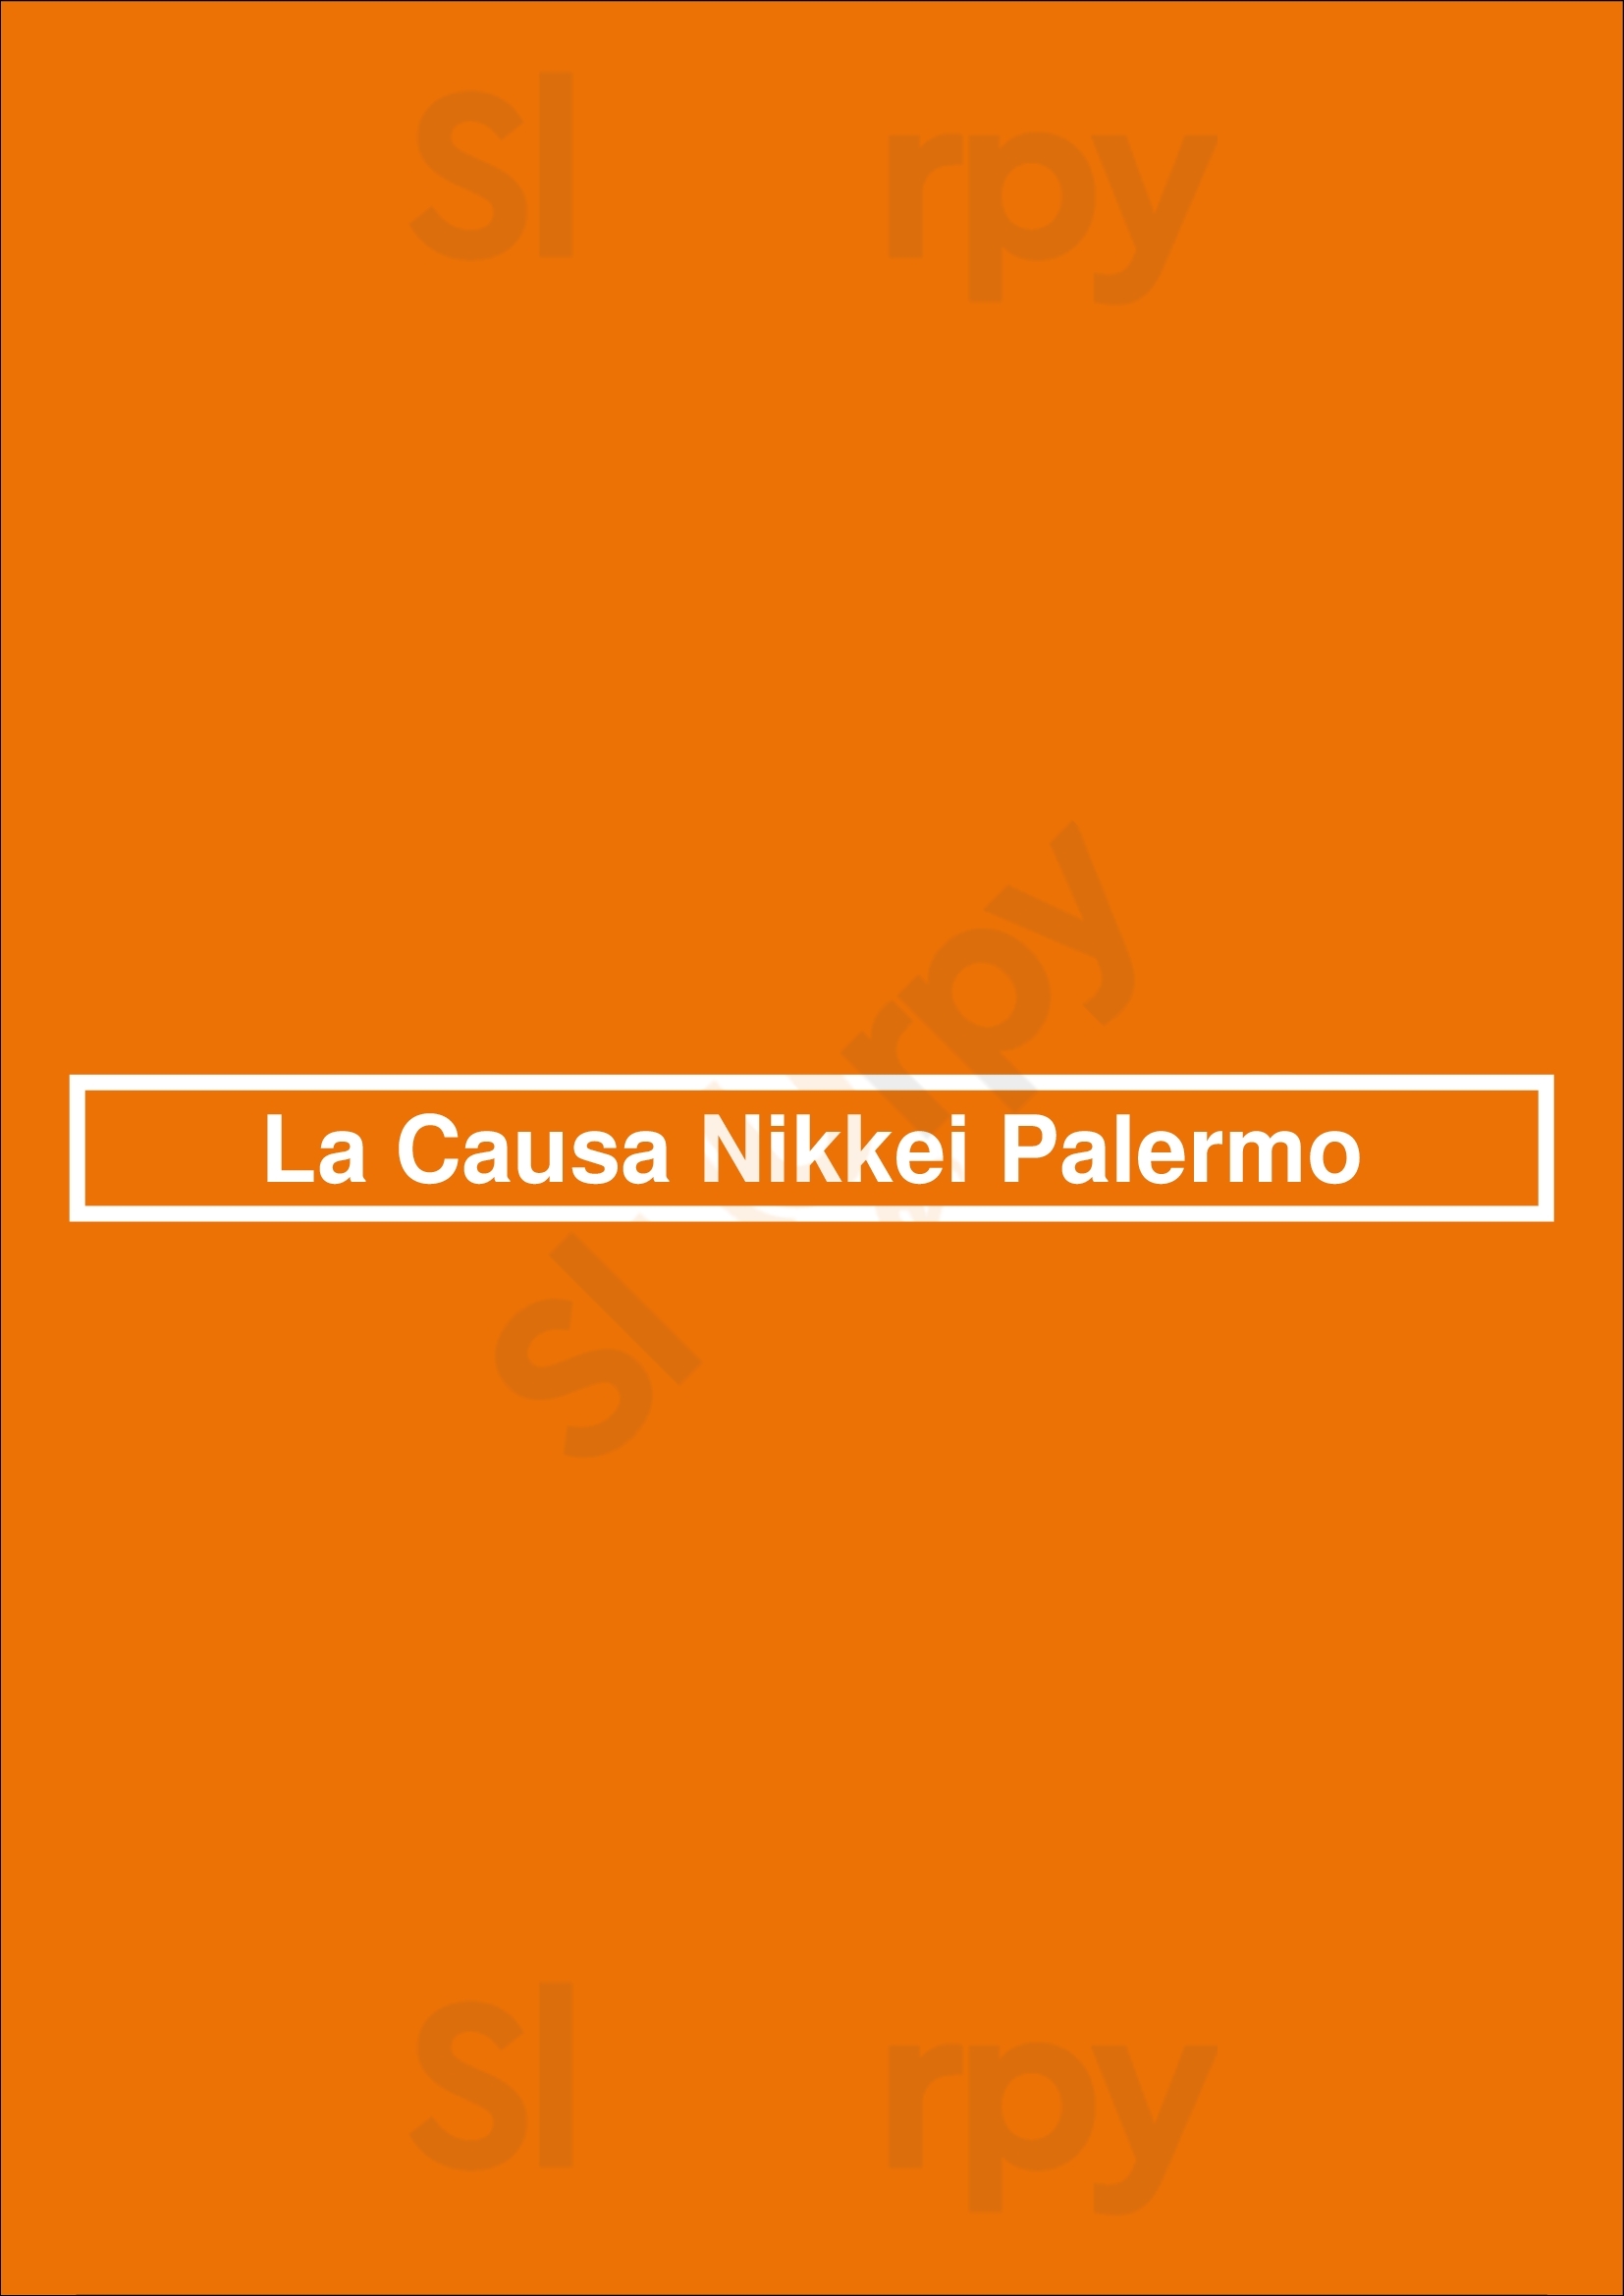 La Causa Nikkei Palermo Buenos Aires Menu - 1